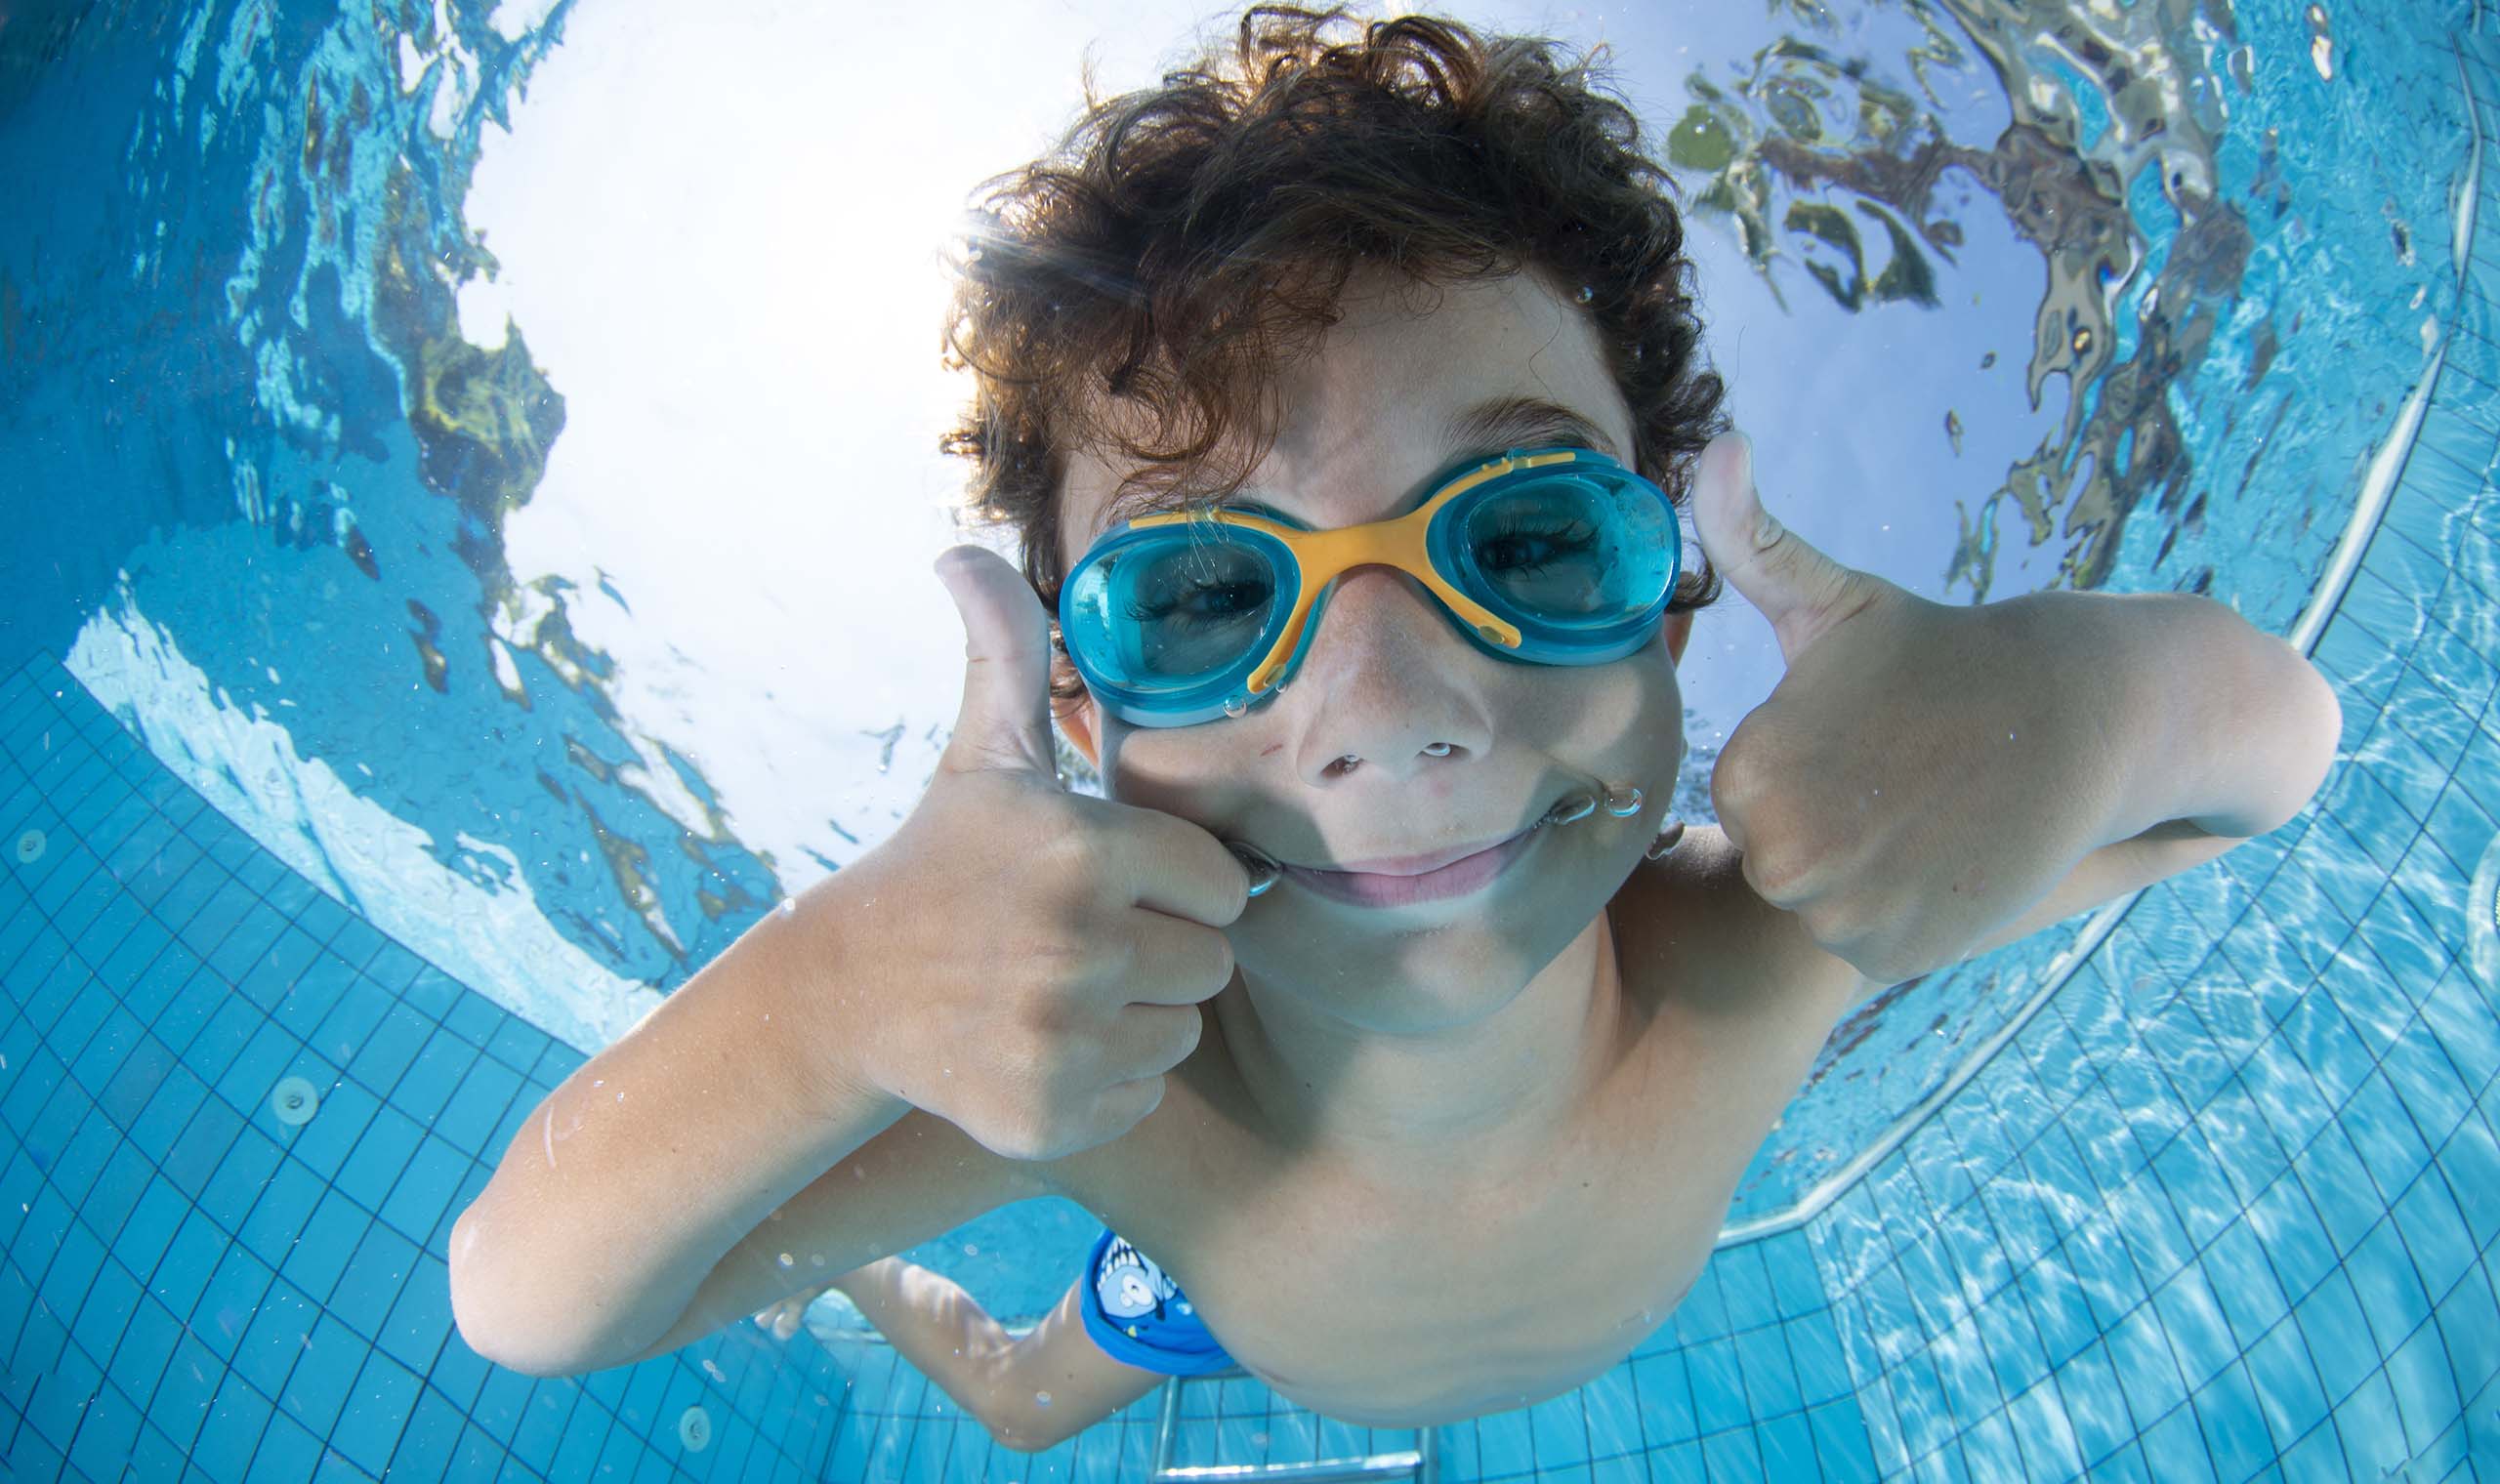 Ontcijferen vlotter geleidelijk Een duikbril voor kinderen: eindeloze waterpret! - Zwembrilletjes.eu Blog